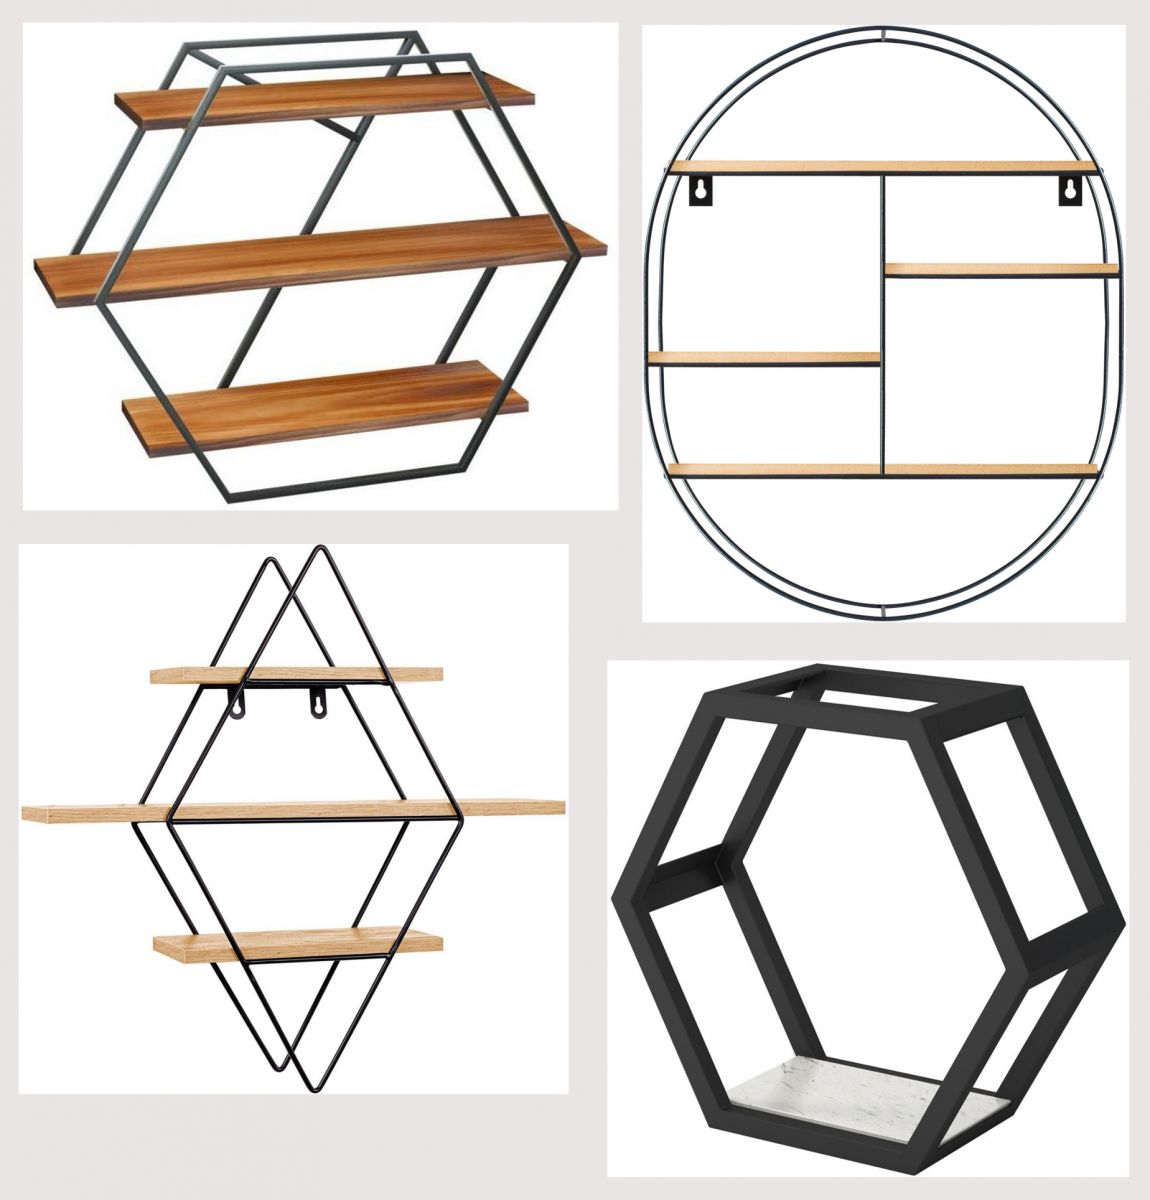 Półki w stylu loft w kształcie heksagonu, owalu i rombu